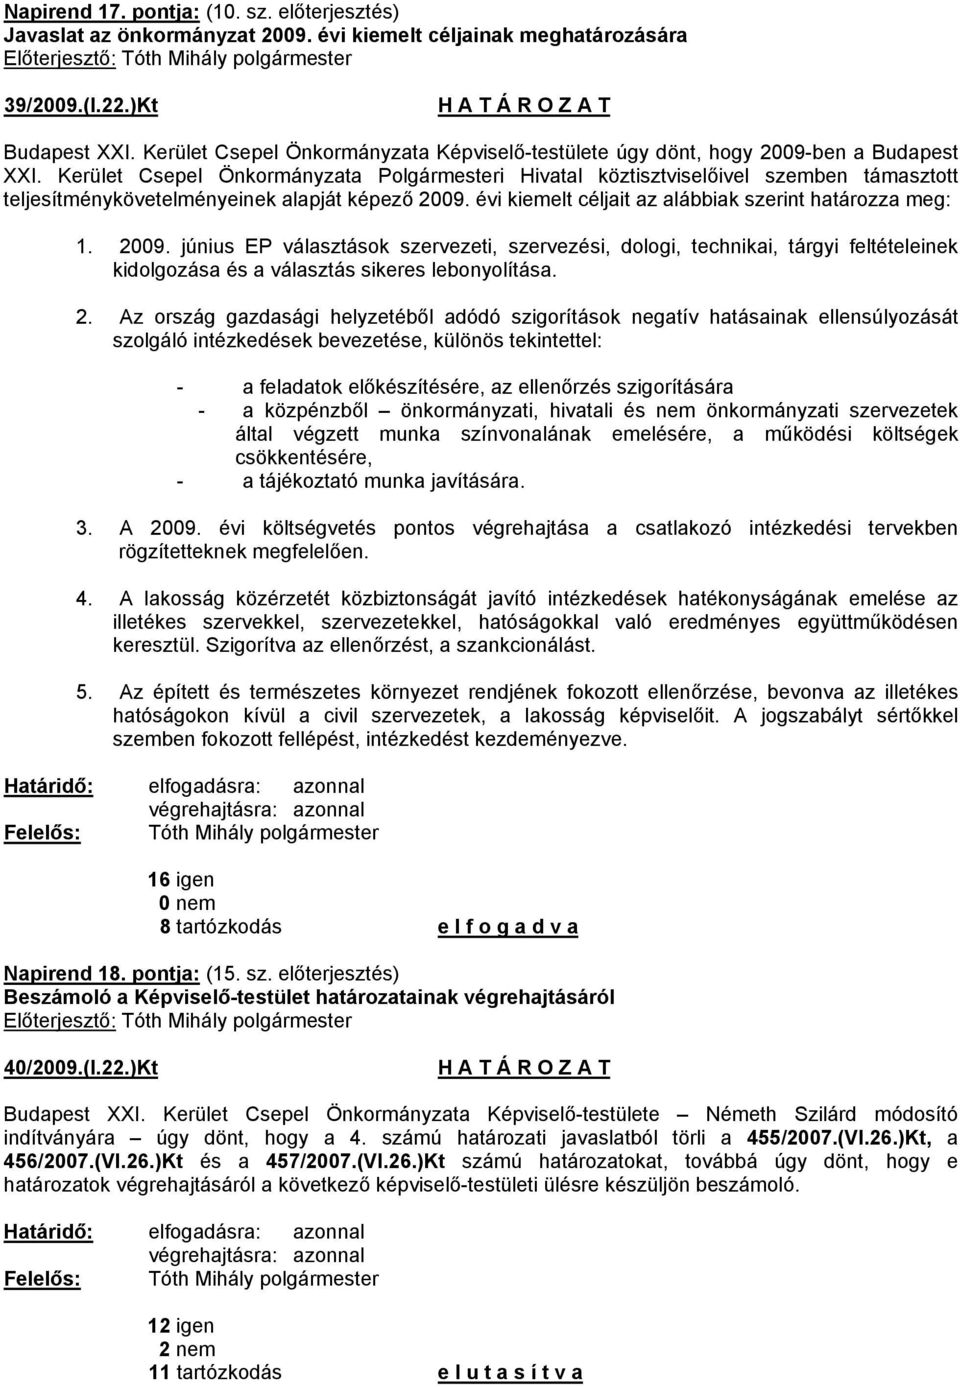 Kerület Csepel Önkormányzata Polgármesteri Hivatal köztisztviselőivel szemben támasztott teljesítménykövetelményeinek alapját képező 2009. évi kiemelt céljait az alábbiak szerint határozza meg: 1.